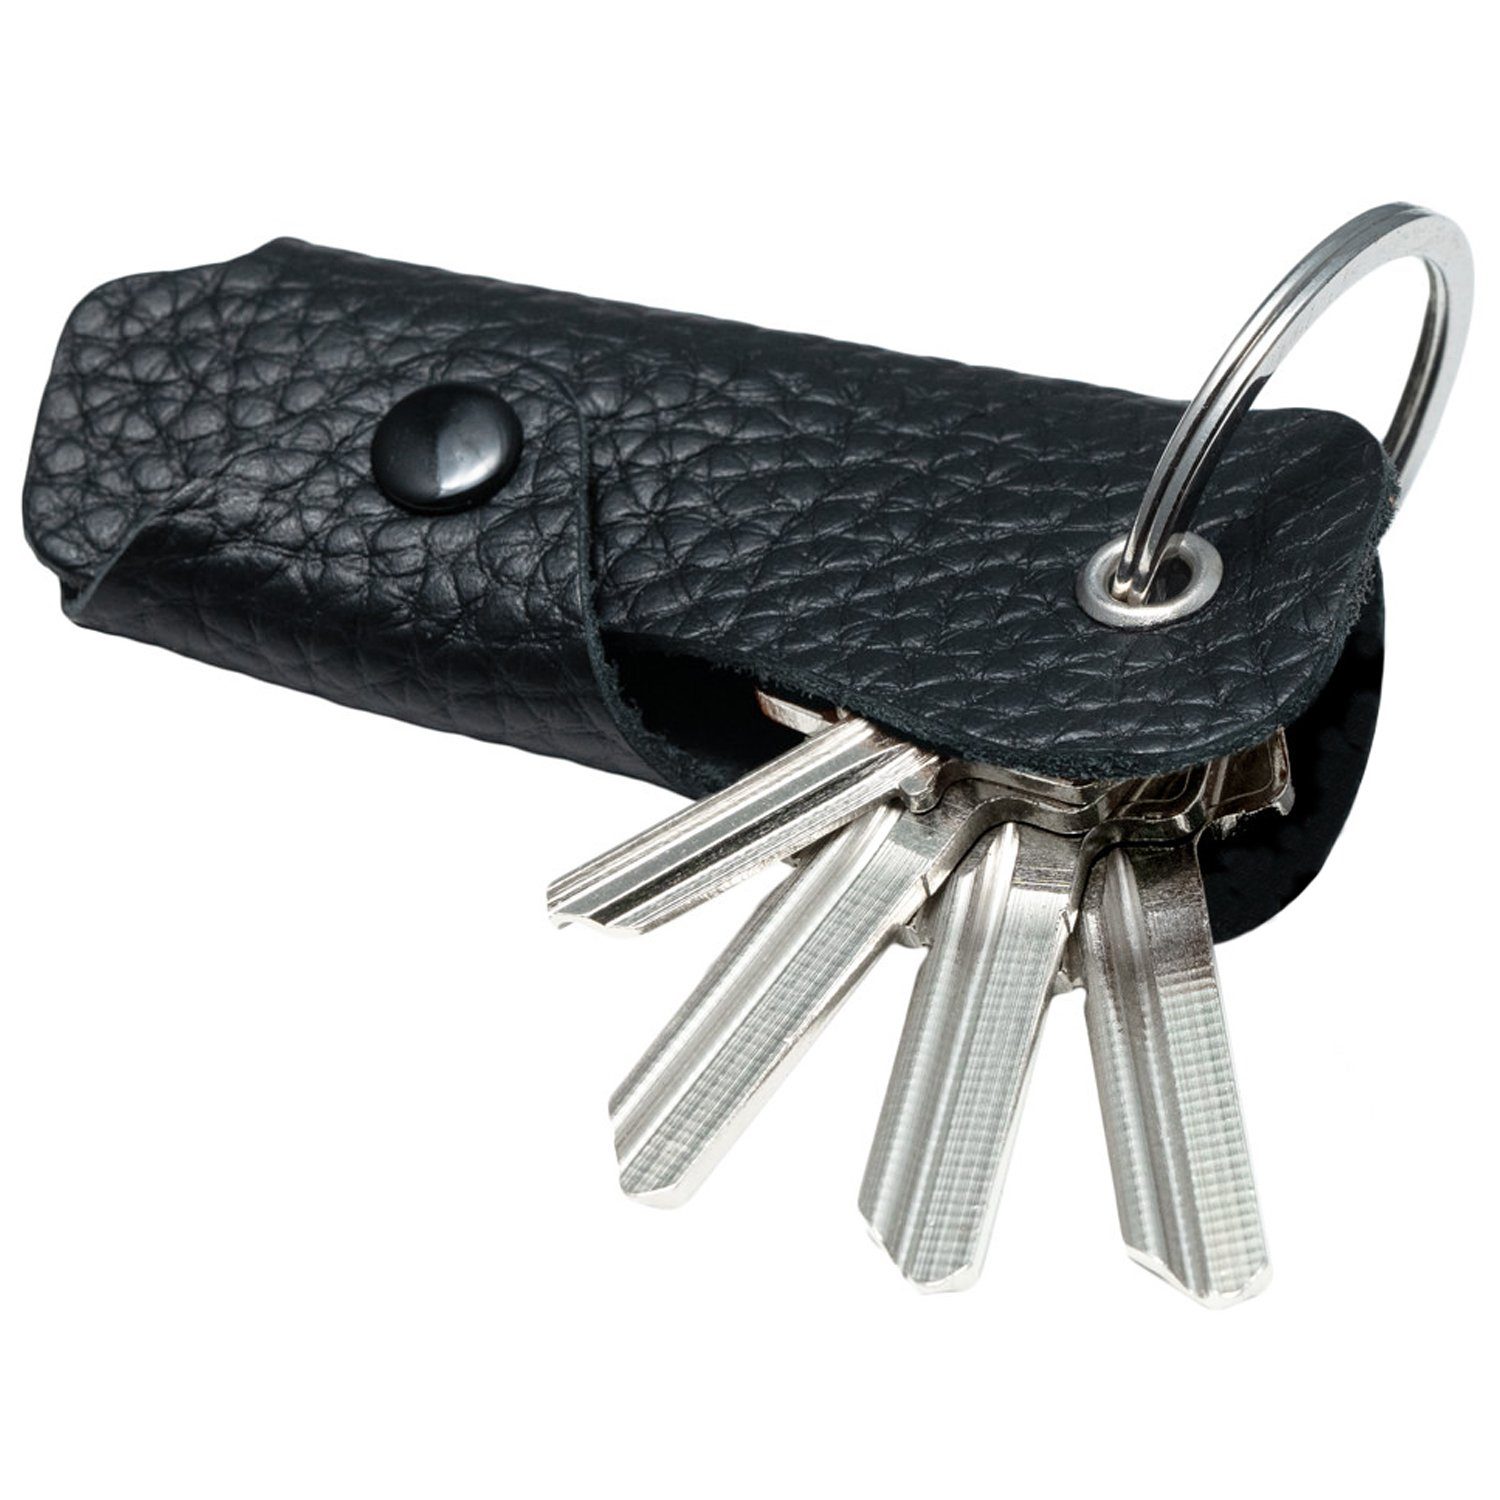 MAGATI Schlüsseltasche Occhio Nero aus Leder, Platz für 1-6 Schlüssel, Schlüsselanhänger Schwarz Nappa